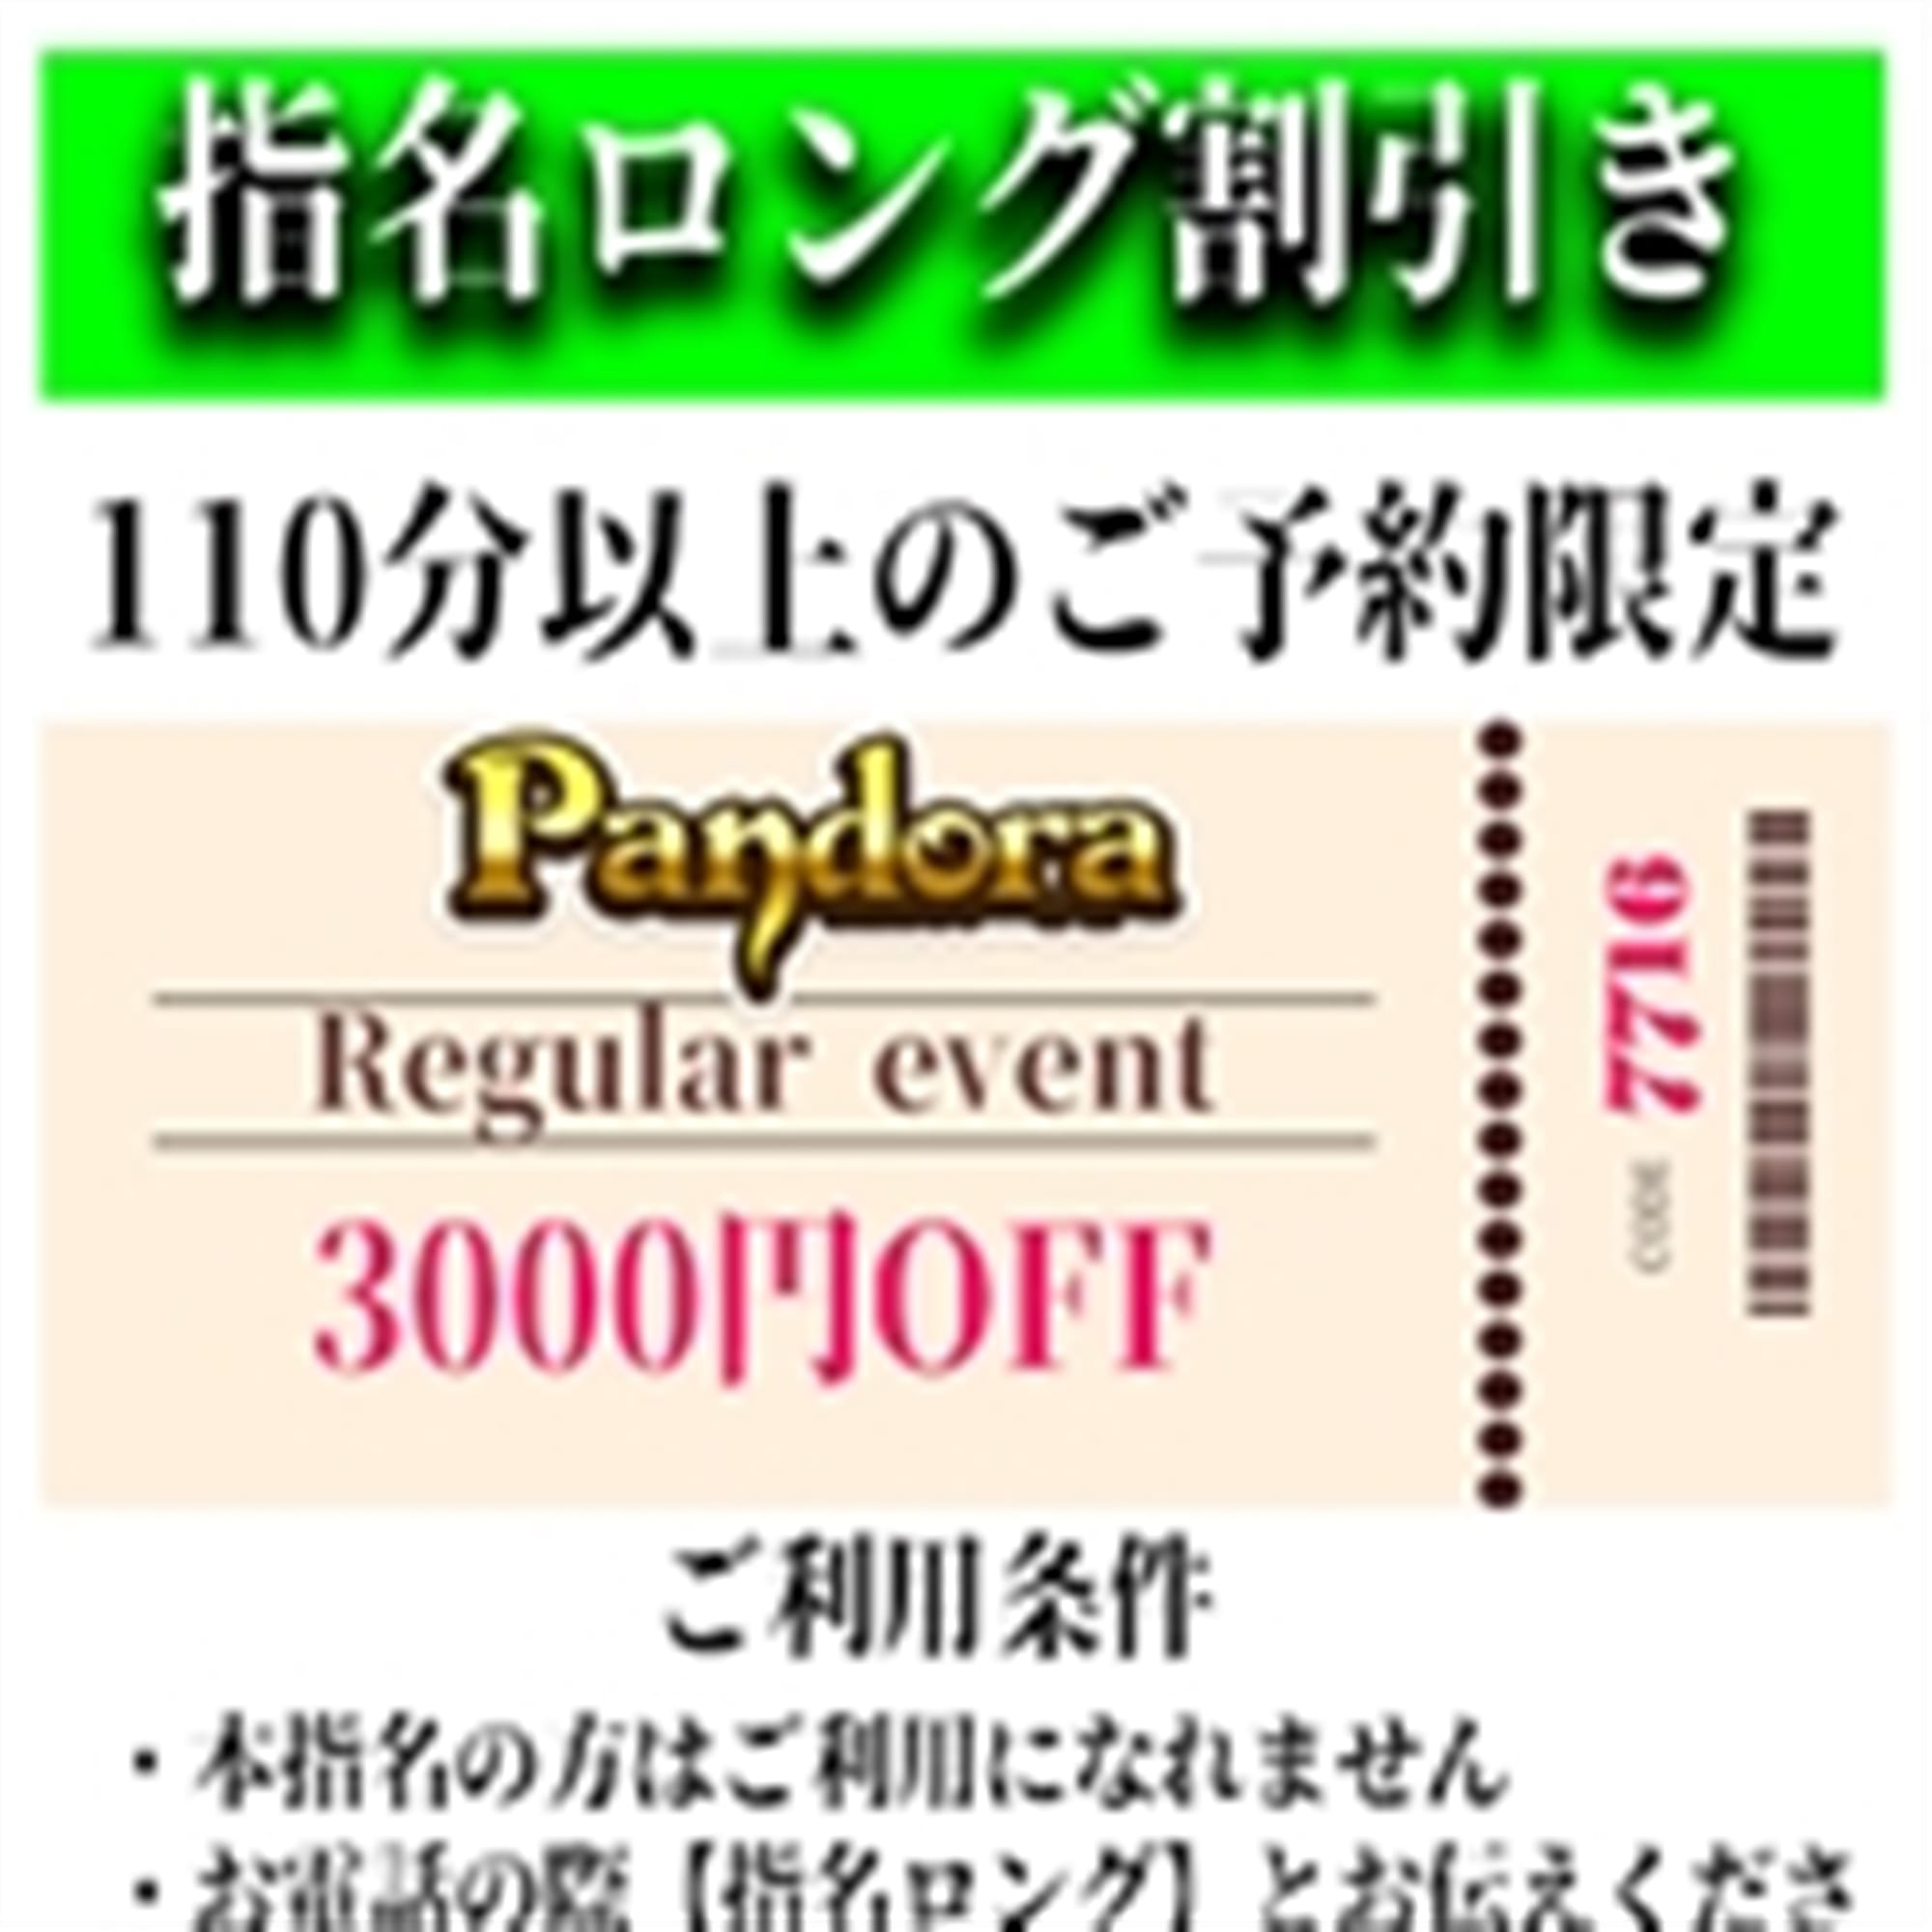 「ご指名のお客様も遊べるロングコース割引」04/19(金) 17:52 | Pandora(パンドラ)新潟のお得なニュース